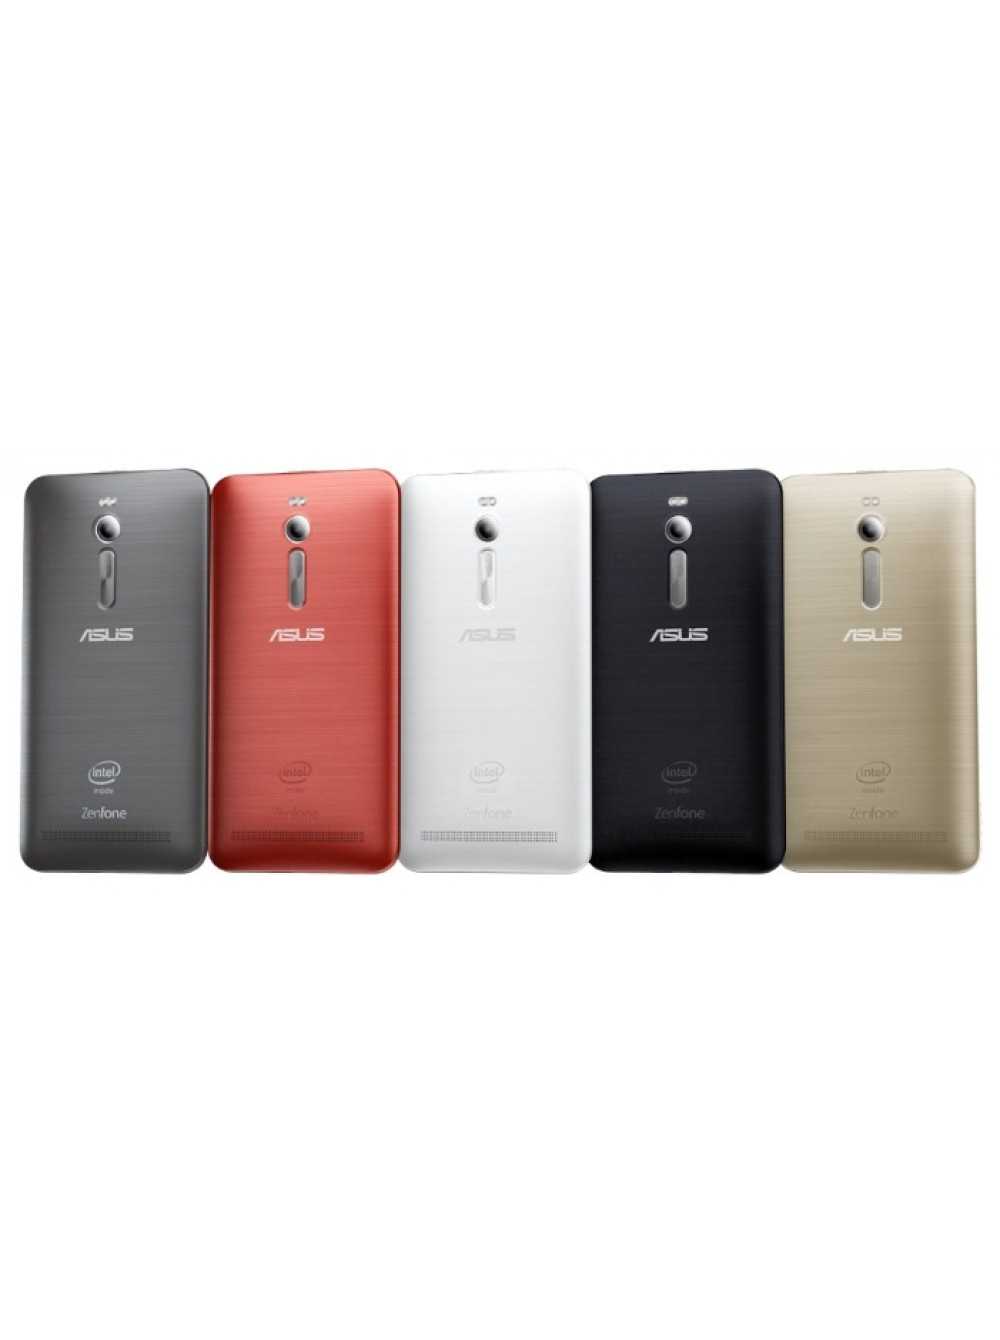 Мобильный телефон Asus ZenFone 2 ZE550ML - подробные характеристики обзоры видео фото Цены в интернет-магазинах где можно купить мобильный телефон Asus ZenFone 2 ZE550ML